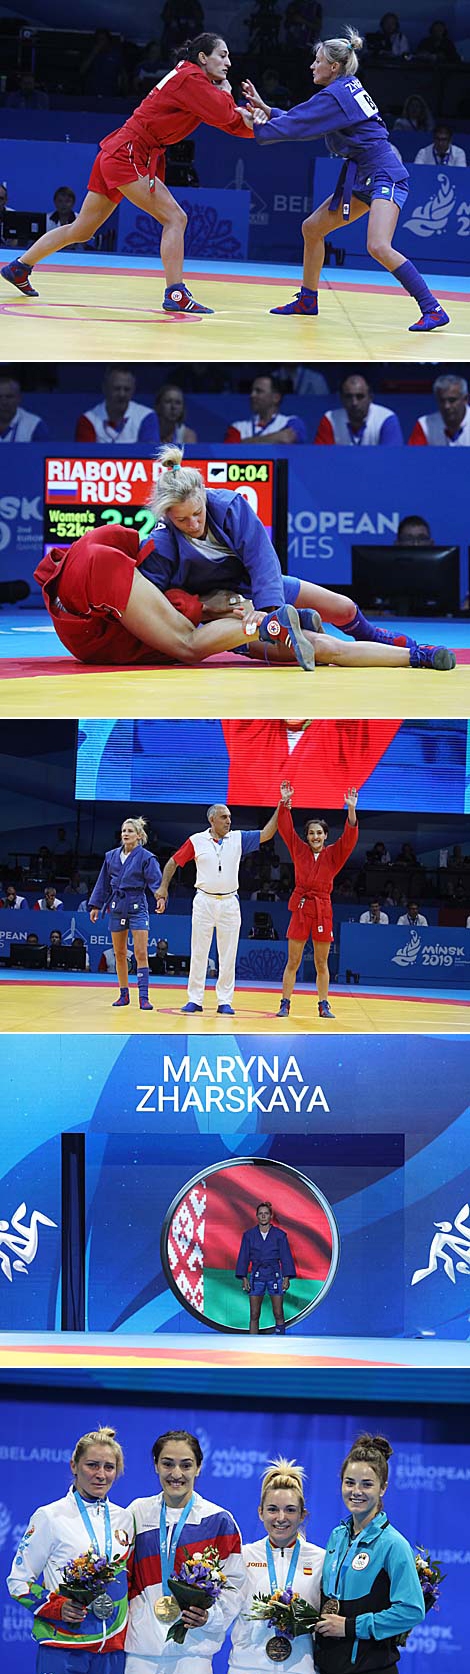 白罗斯桑勃式摔跤手玛琳娜•扎尔斯卡娅成为第二届欧洲运动会的银牌得主